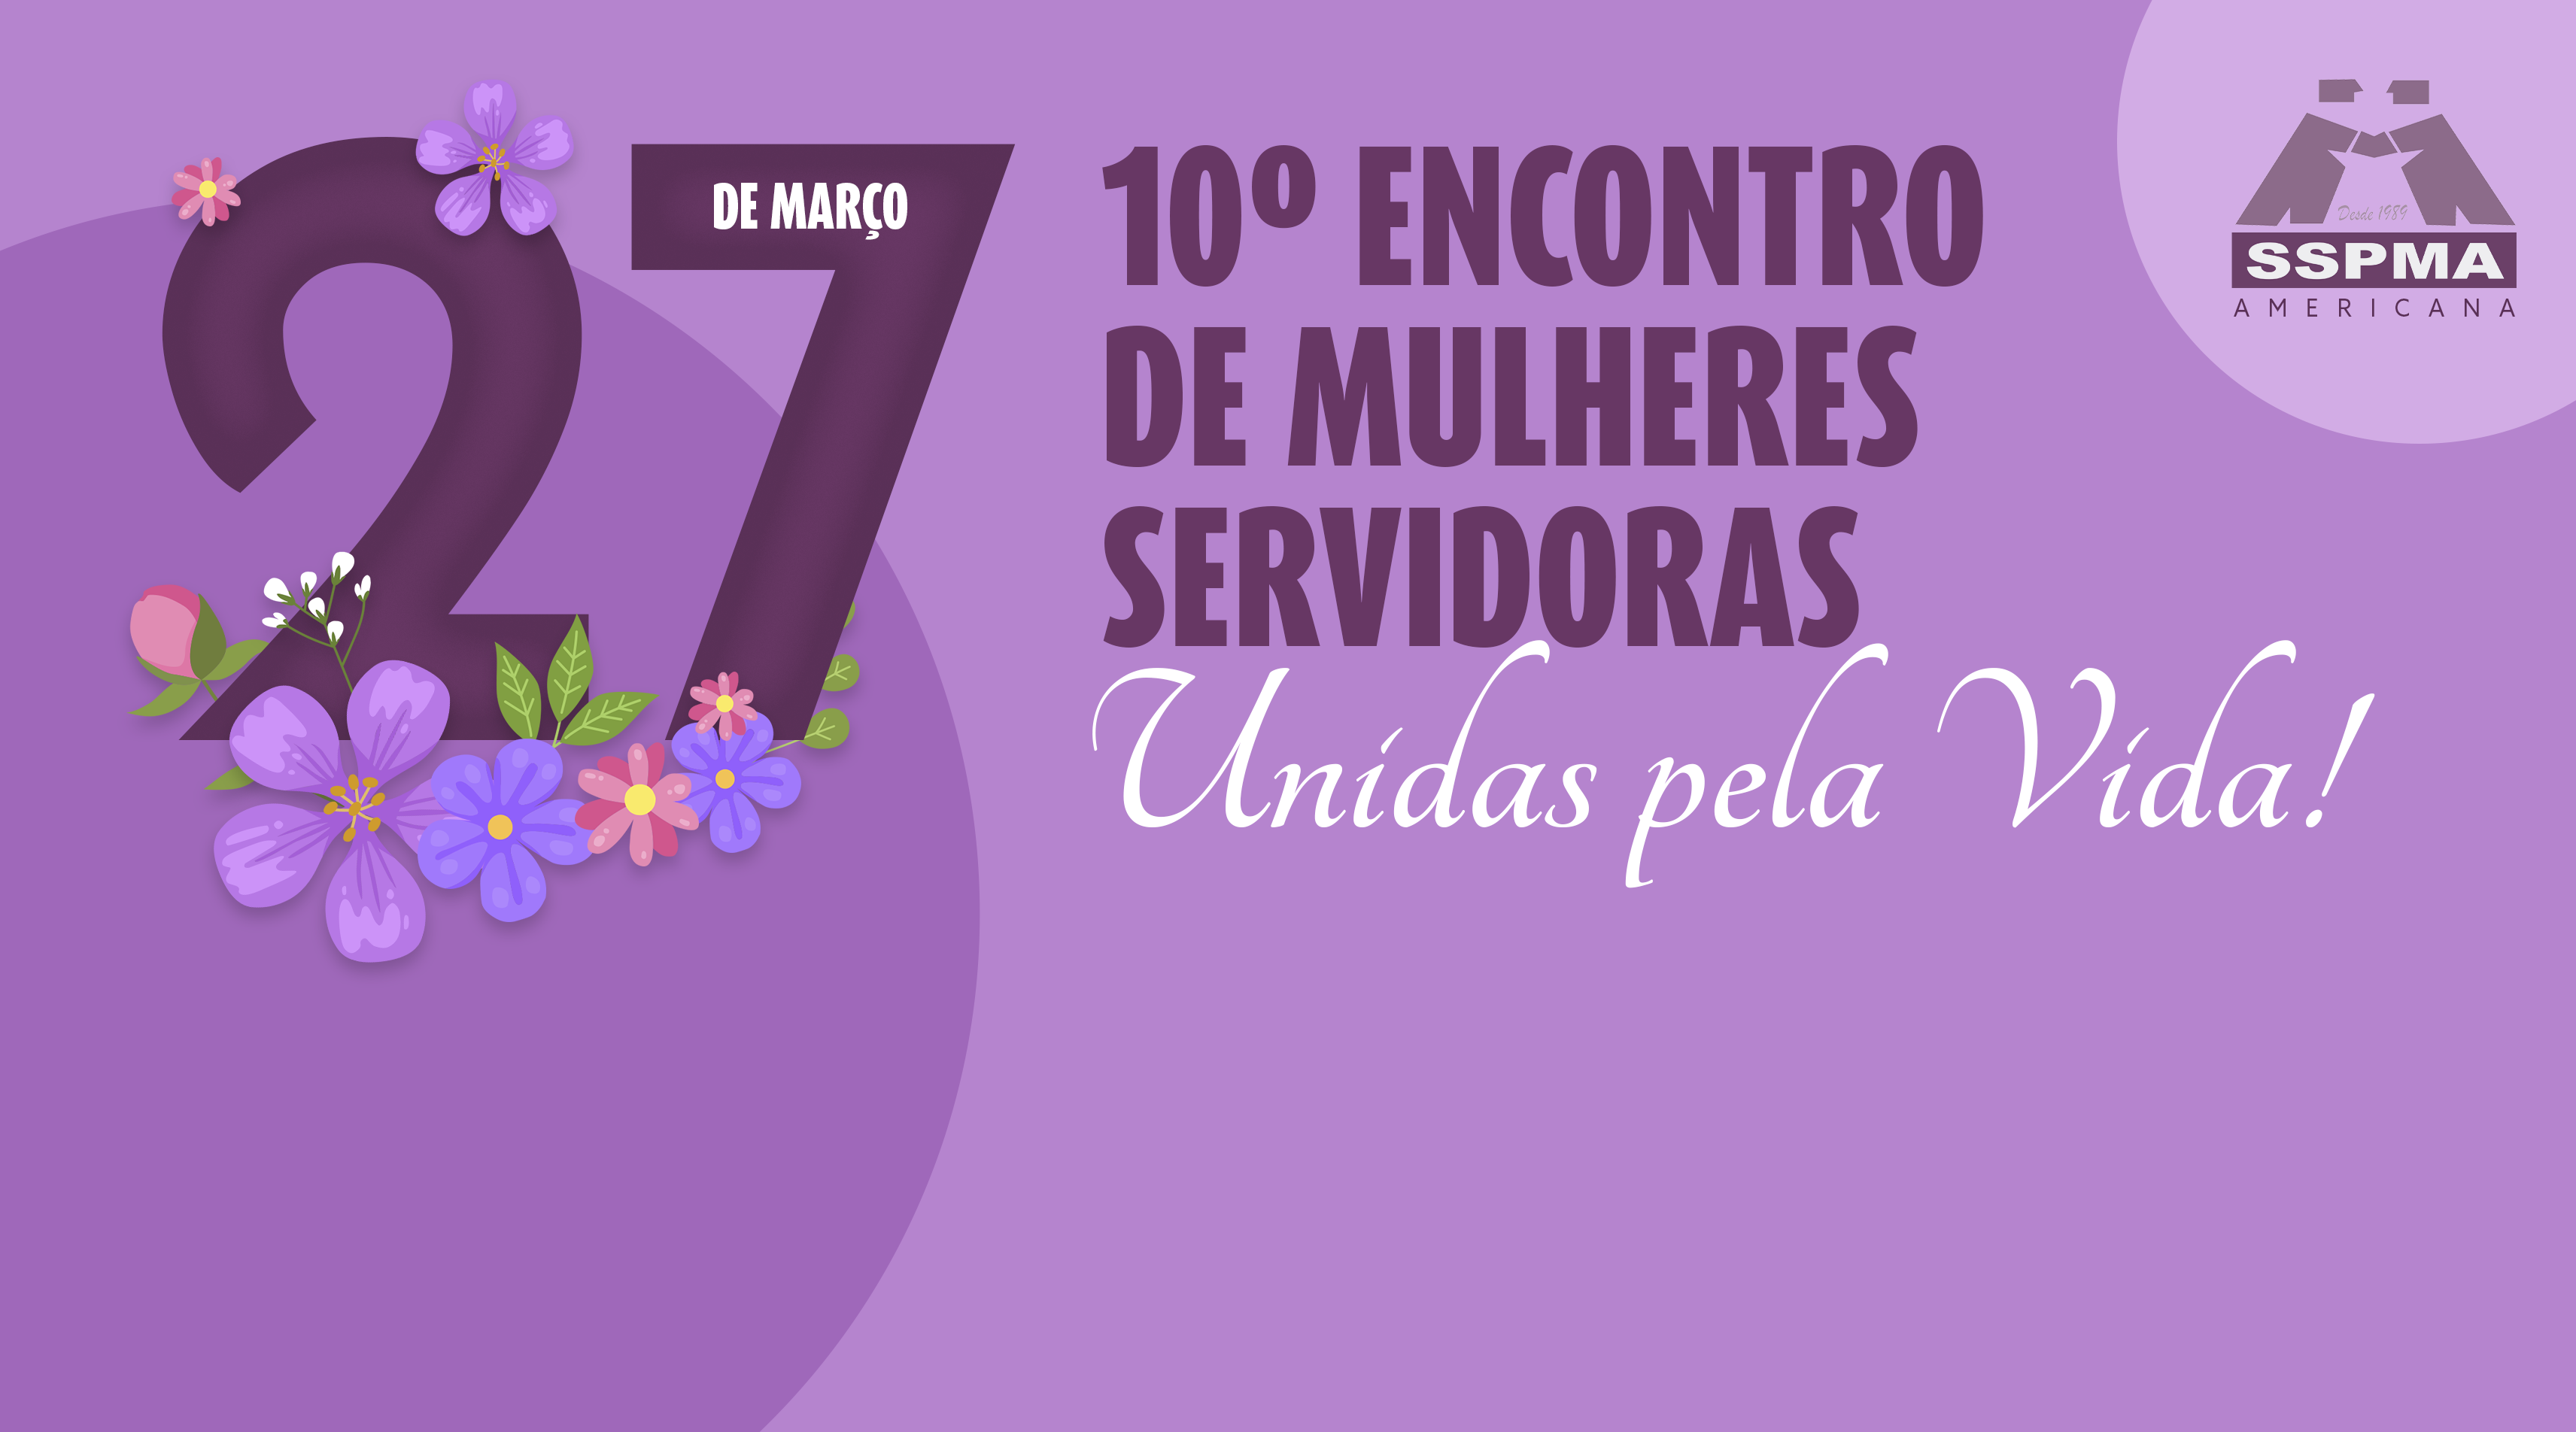 10º Encontro de Mulheres Servidoras será online, dia 27 de março, às 13 horas. Uma LIVE cheia de surpresas!